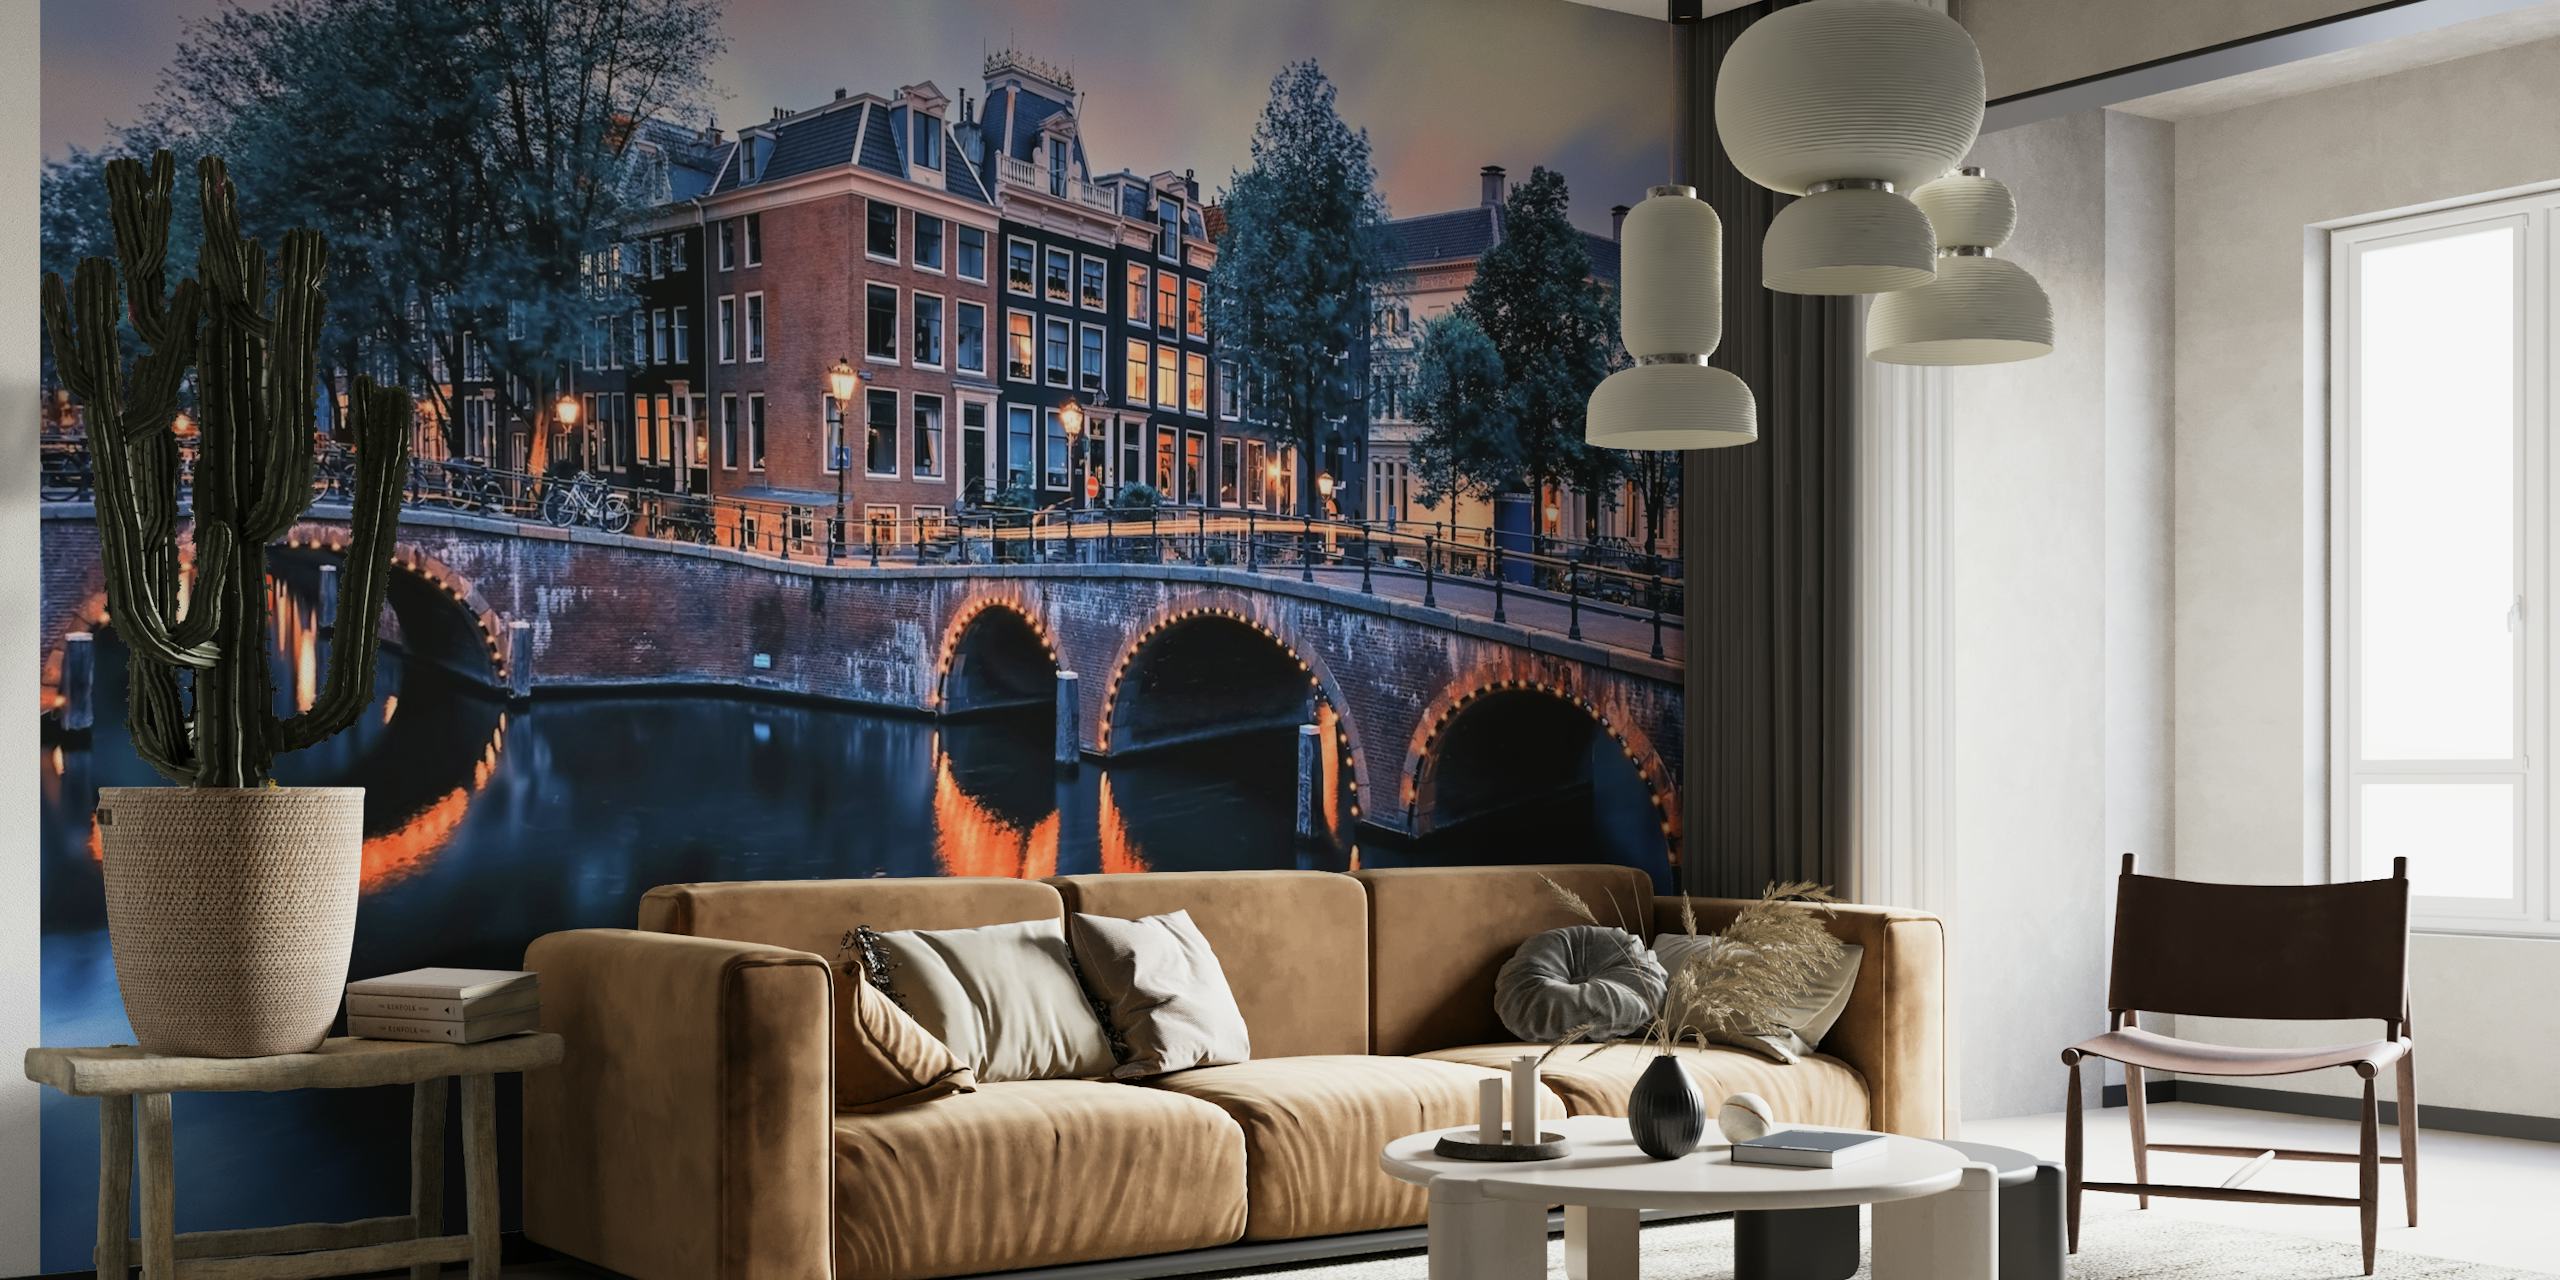 Fotomural casas del canal de amsterdam y puente al atardecer